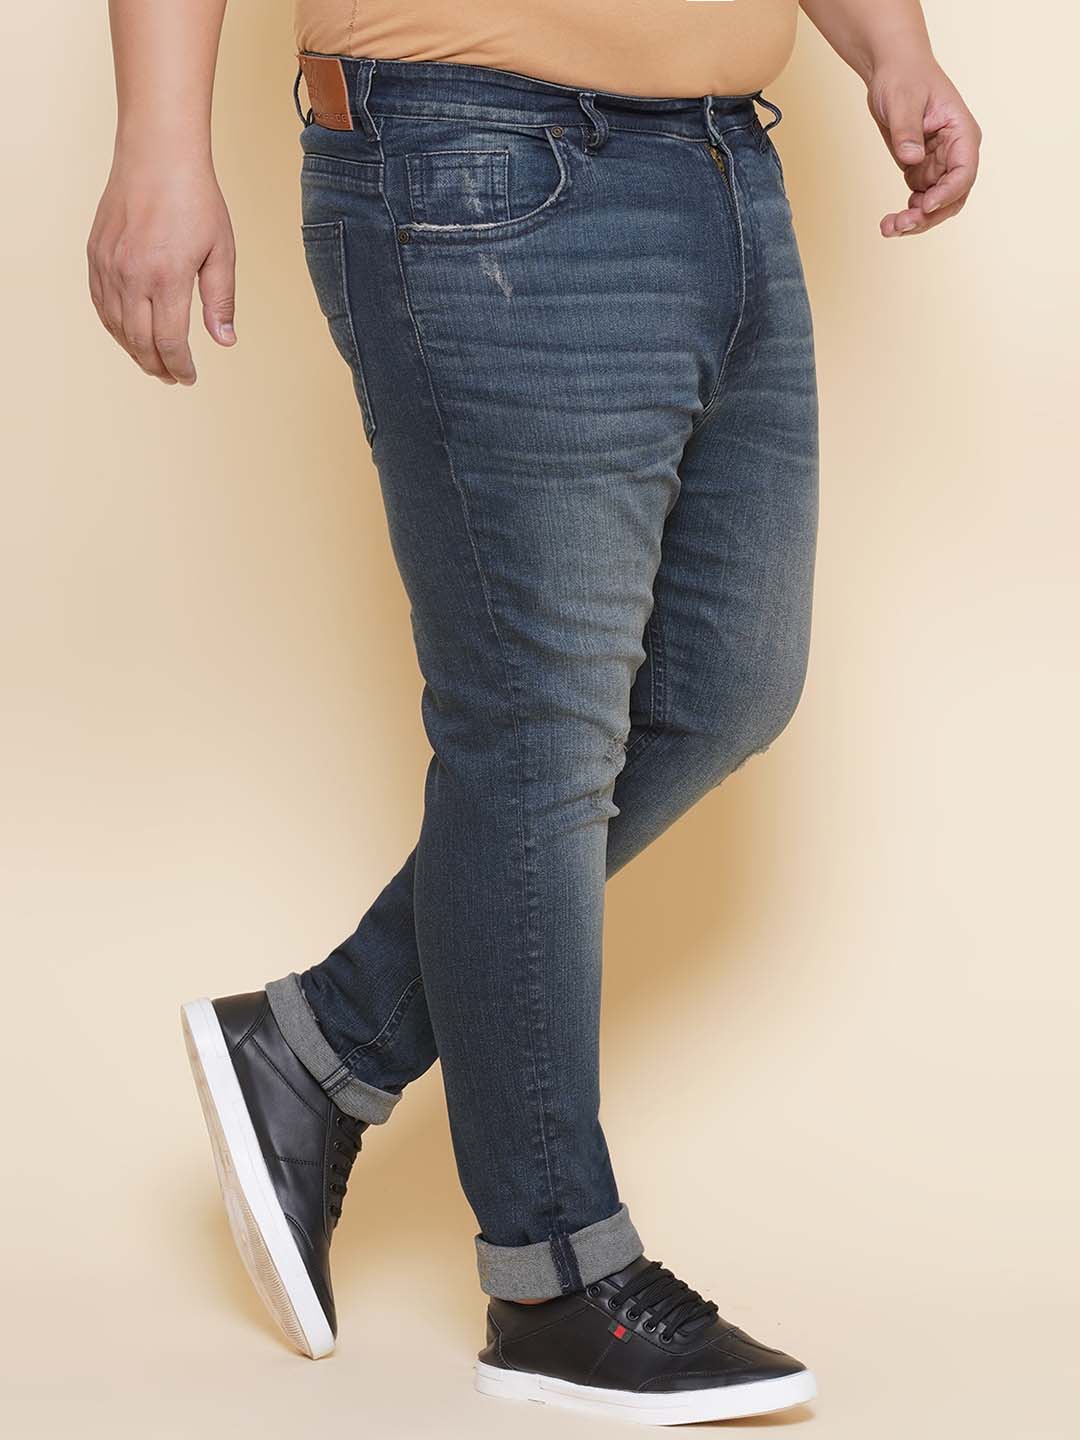 bottomwear/jeans/JPJ12421/jpj12421-3.jpg